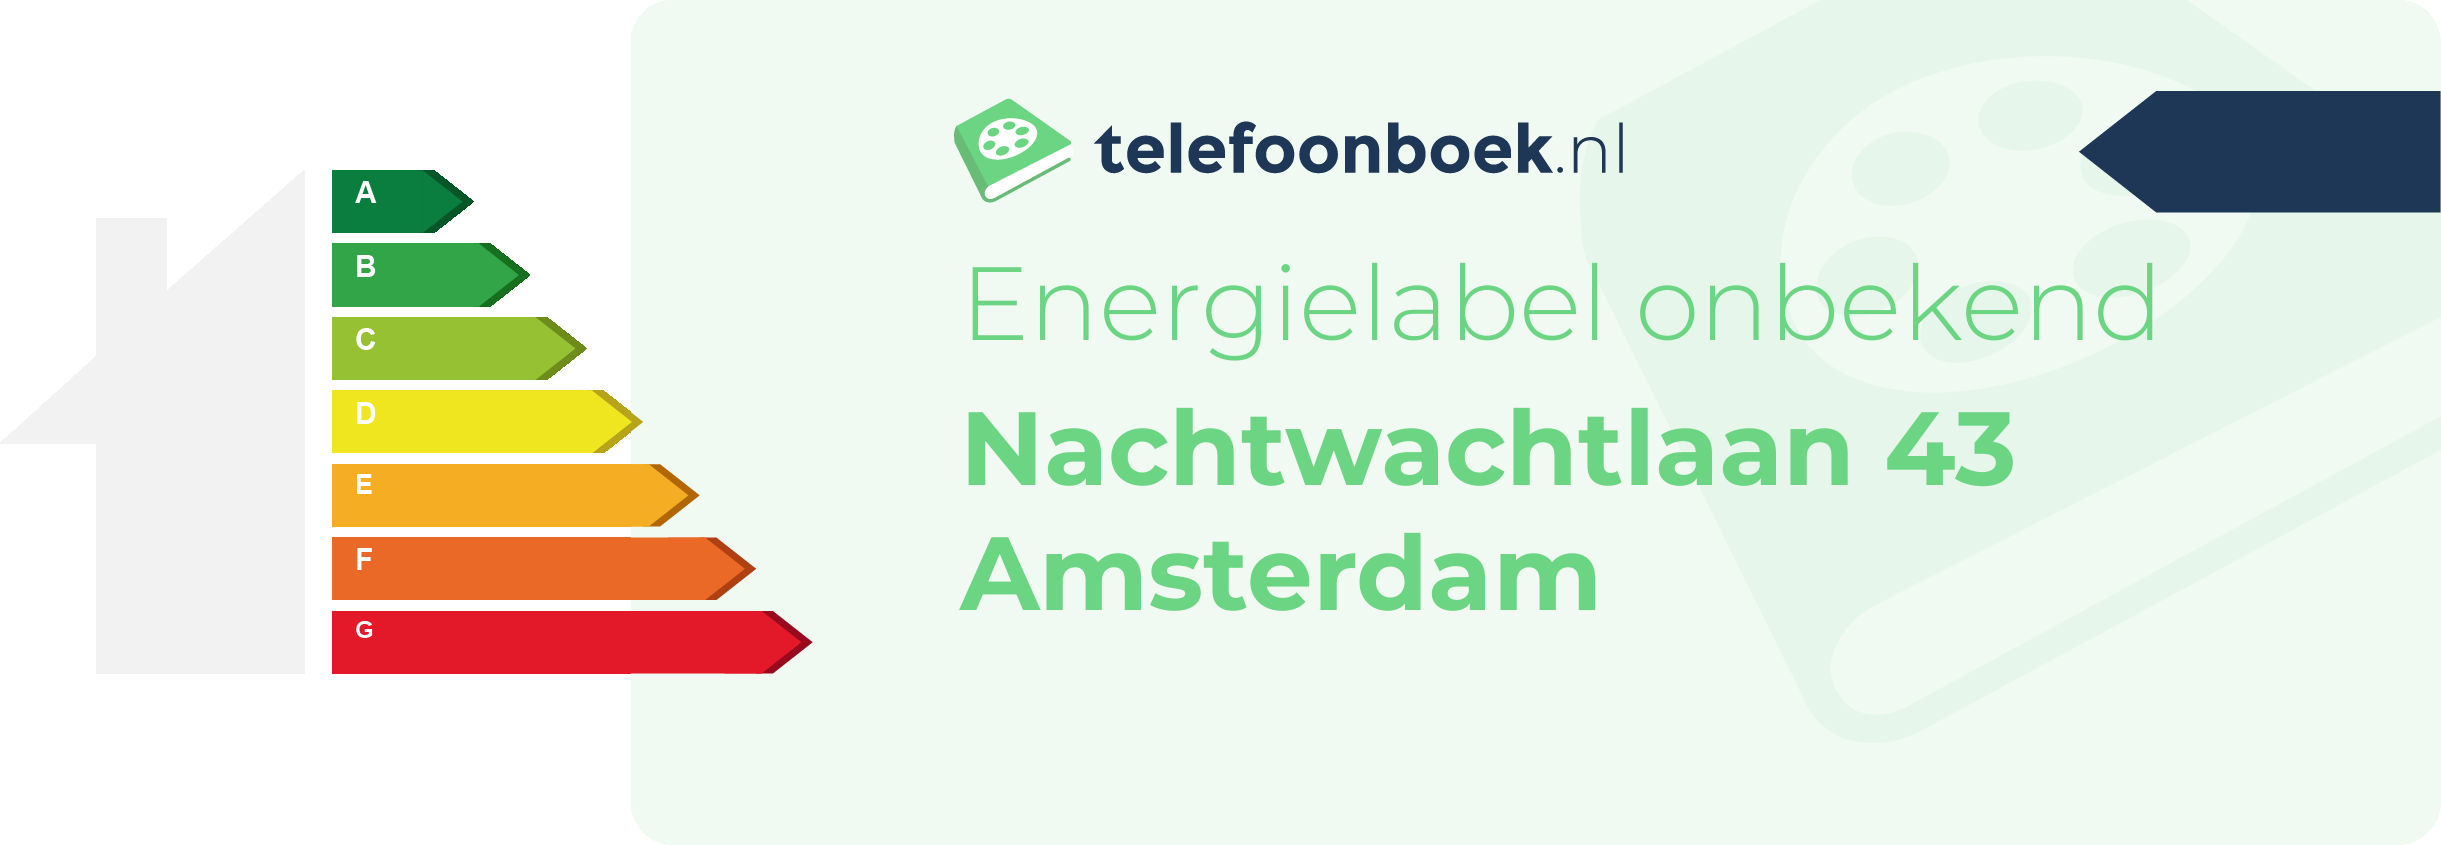 Energielabel Nachtwachtlaan 43 Amsterdam